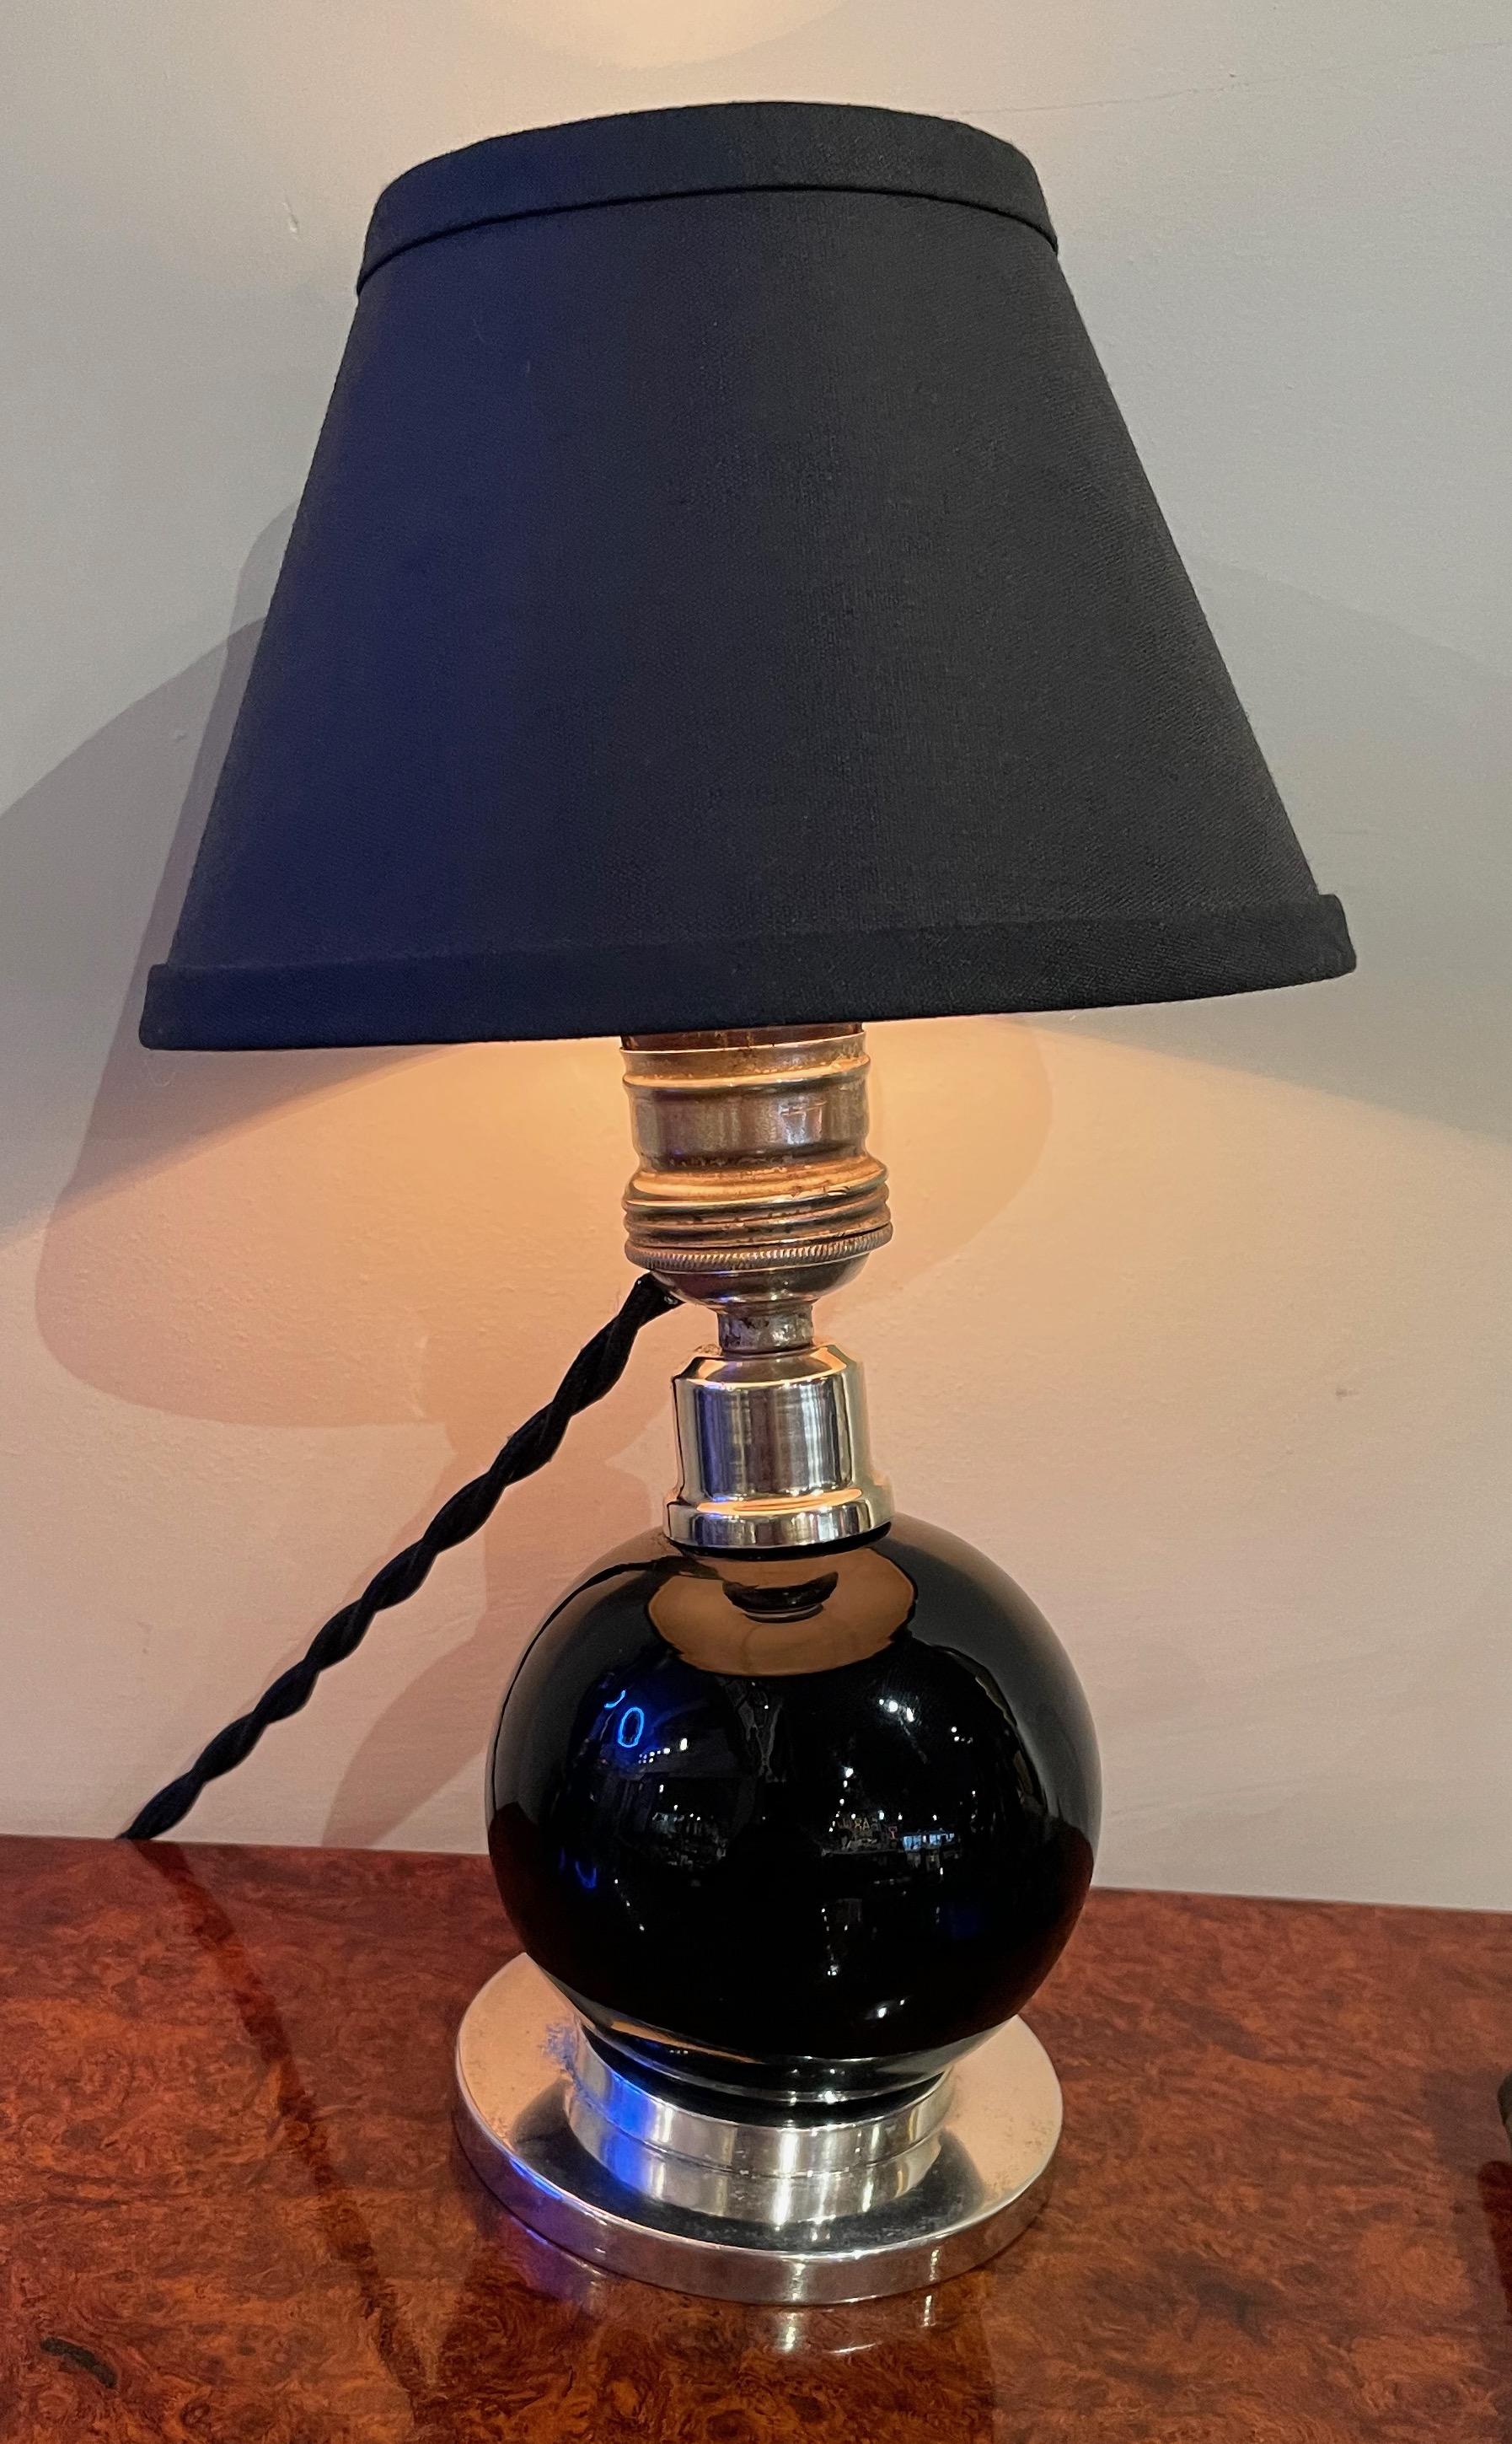 Rare lampe de Jacques Adnet réalisée en cristal noir de Baccarat avec une base en nickel. La balle peut être déplacée dans différentes positions. Cette lampe date des années 1940 et est documentée dans le livre Adnet (modèle 7706). Cette lampe